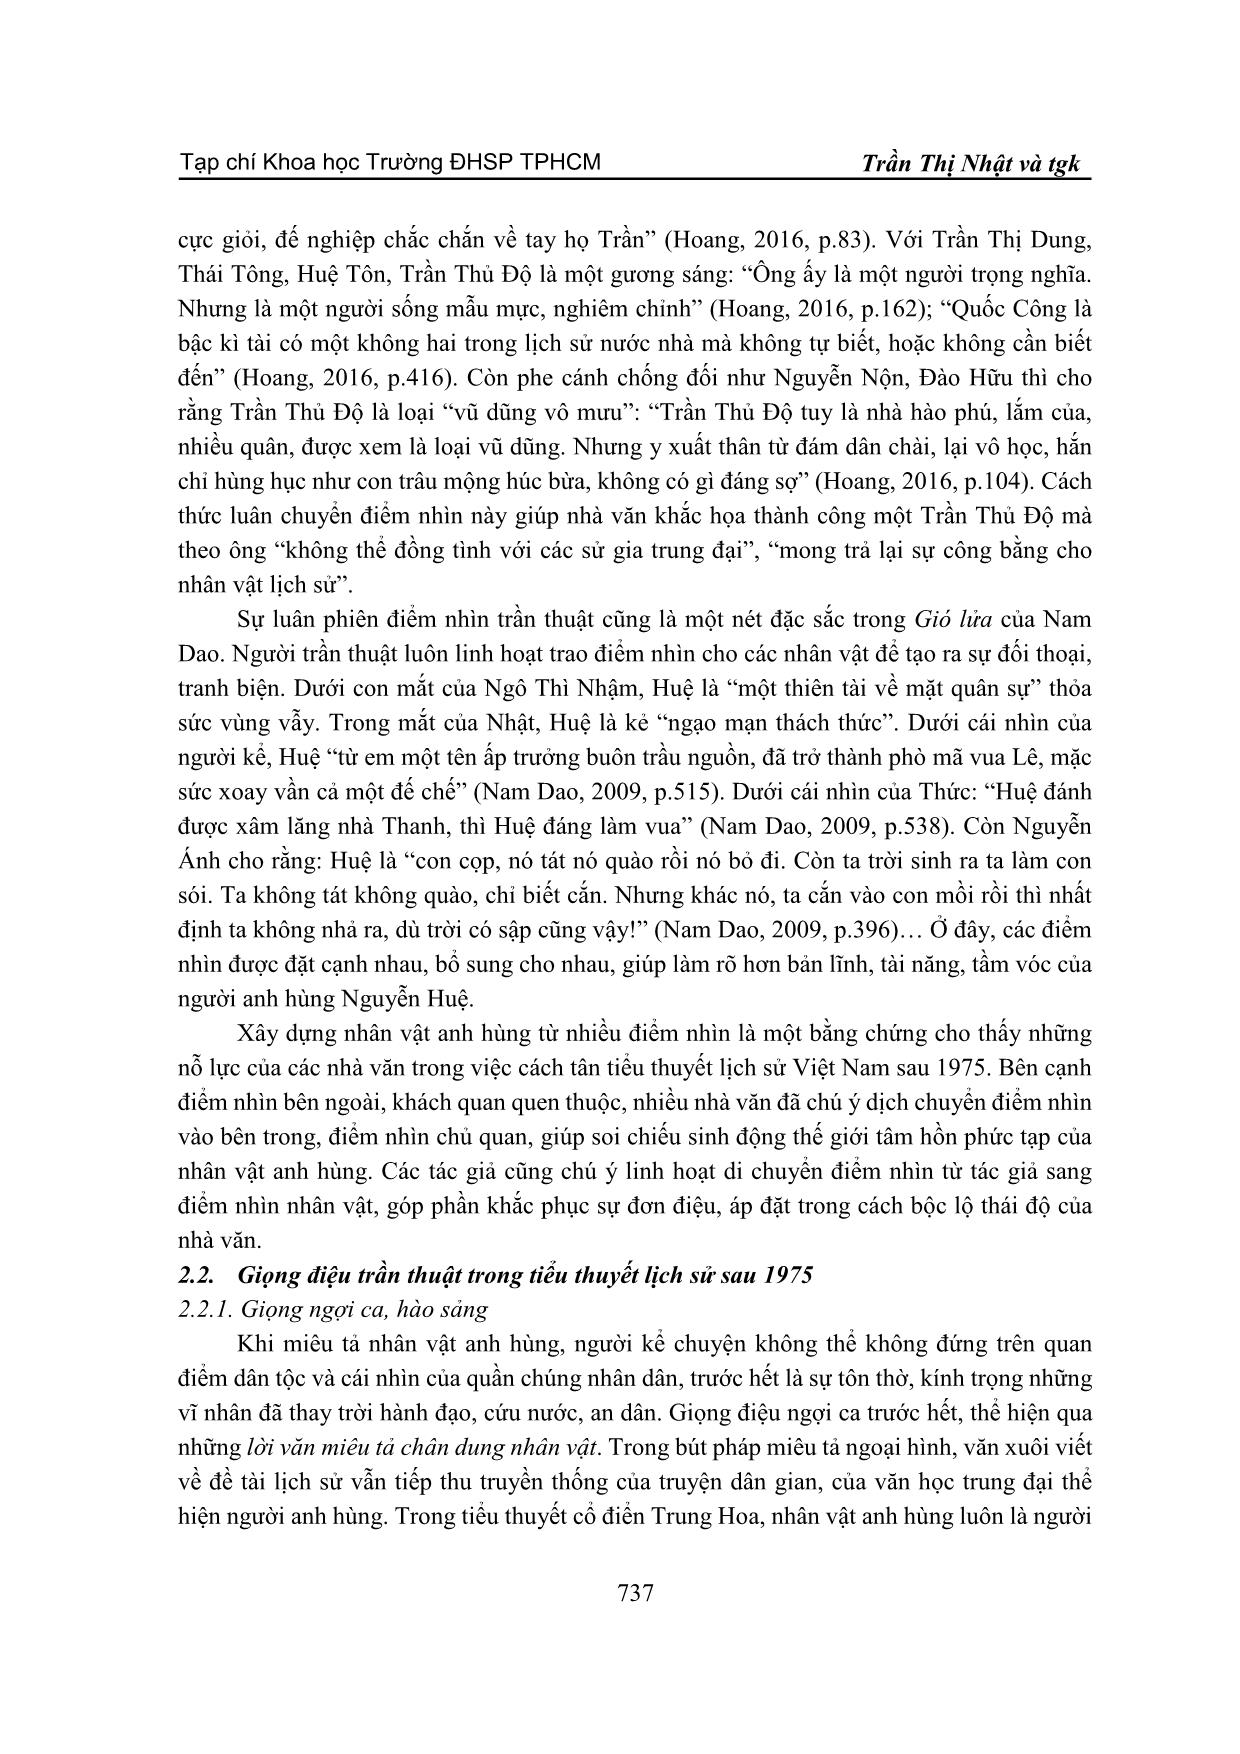 Điểm nhìn và giọng điệu trần thuật khi miêu tả nhân vật anh hùng trong tiểu thuyết lịch sử Việt Nam sau 1975 trang 7